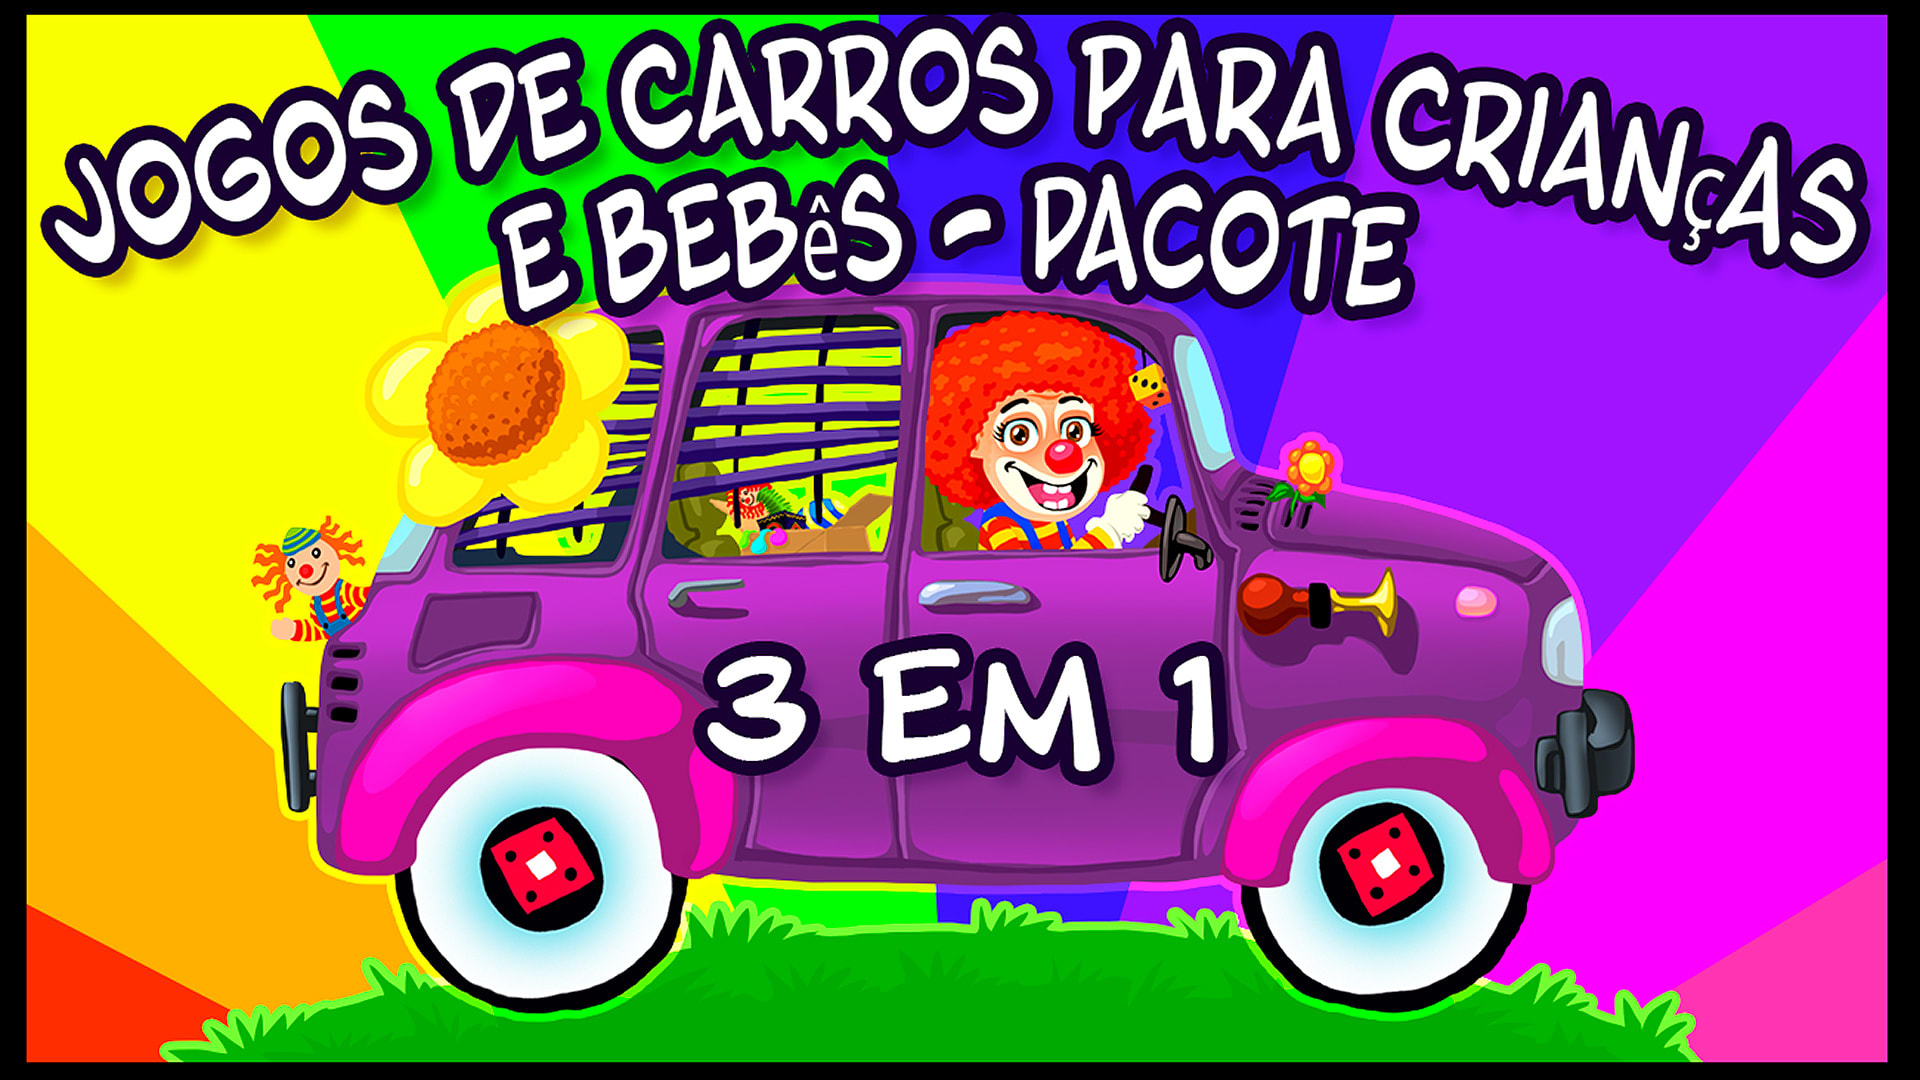 Jogos de Carros para Crianças e Bebês - Pacote 3 em 1